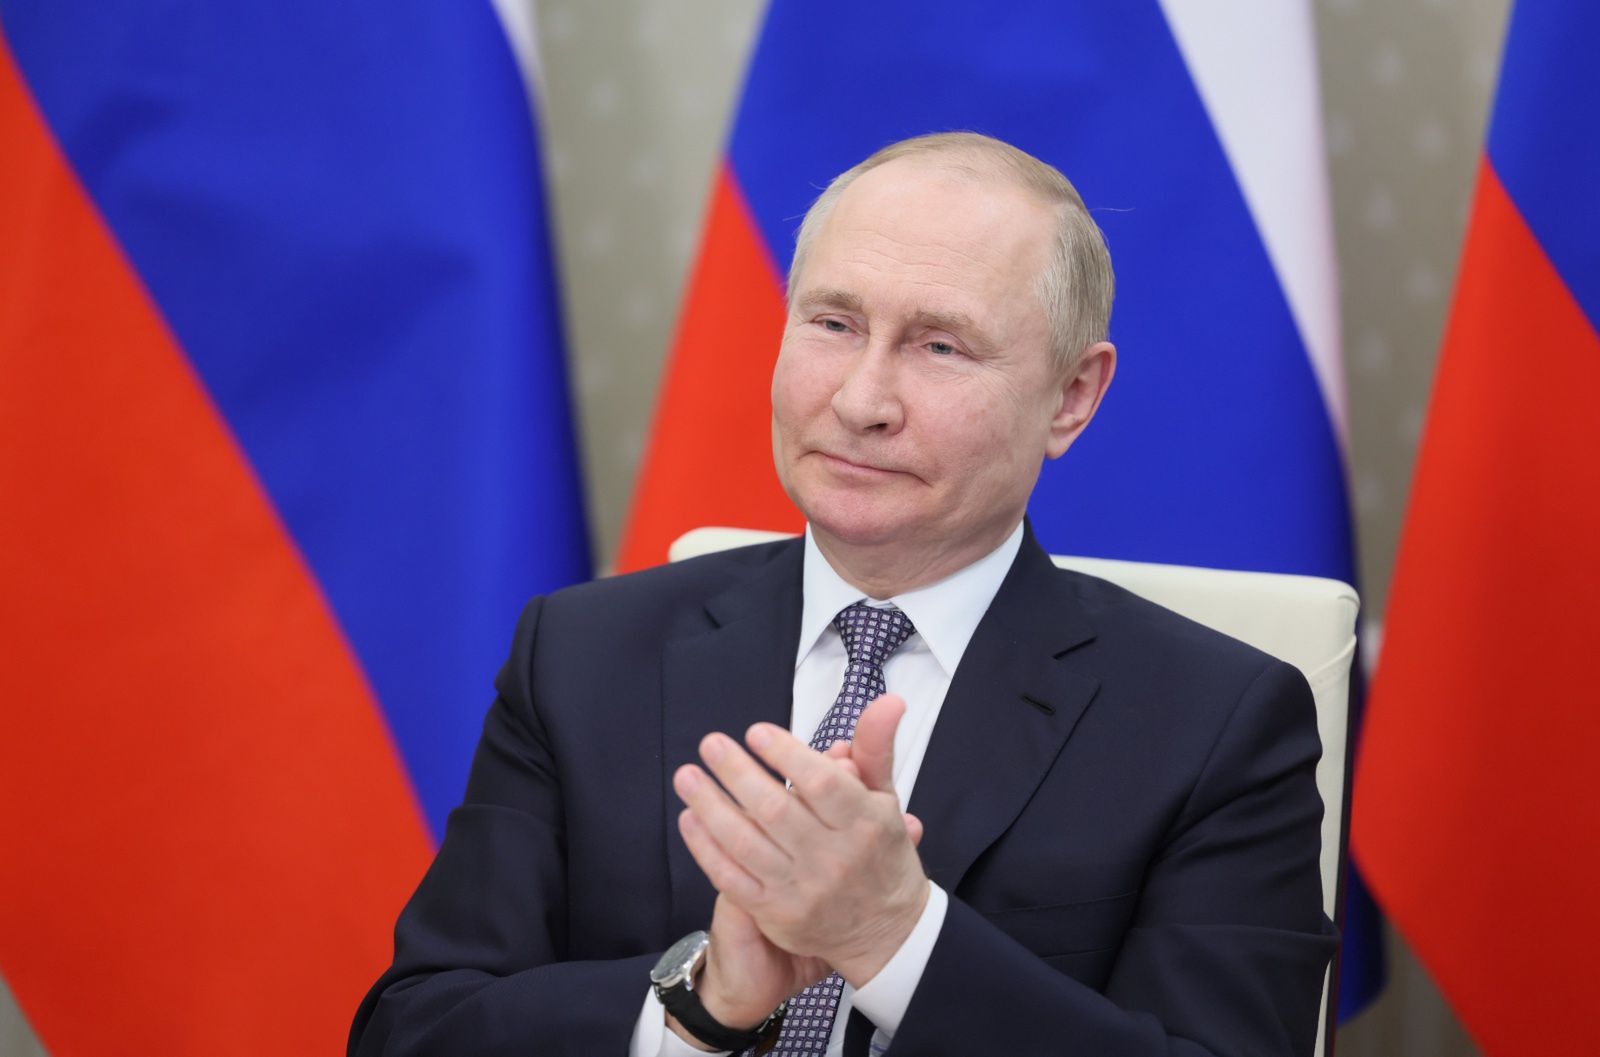 Władimir Putin o wynikach pseudoreferendów: "Sam jestem zaskoczony"